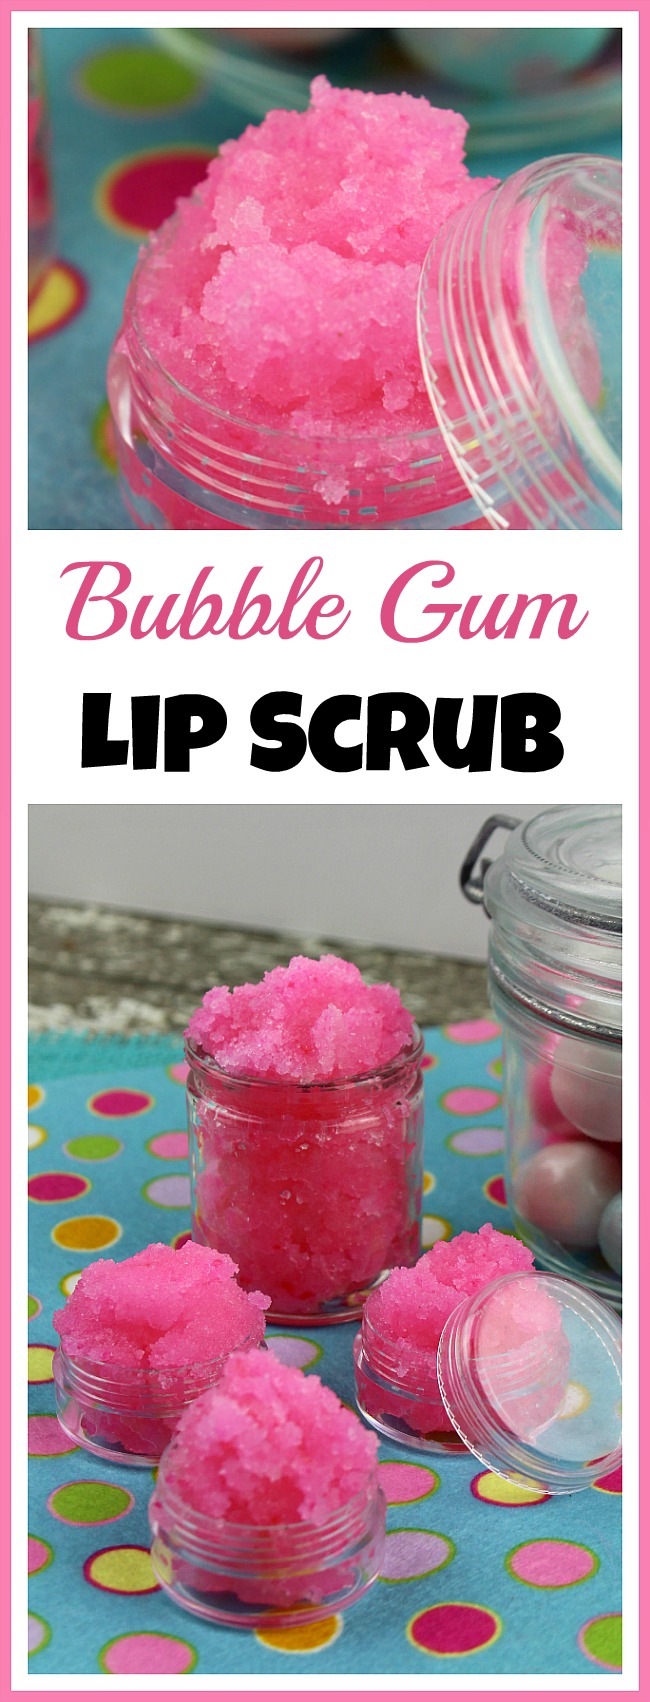 Bubble Gum Lip Scrub